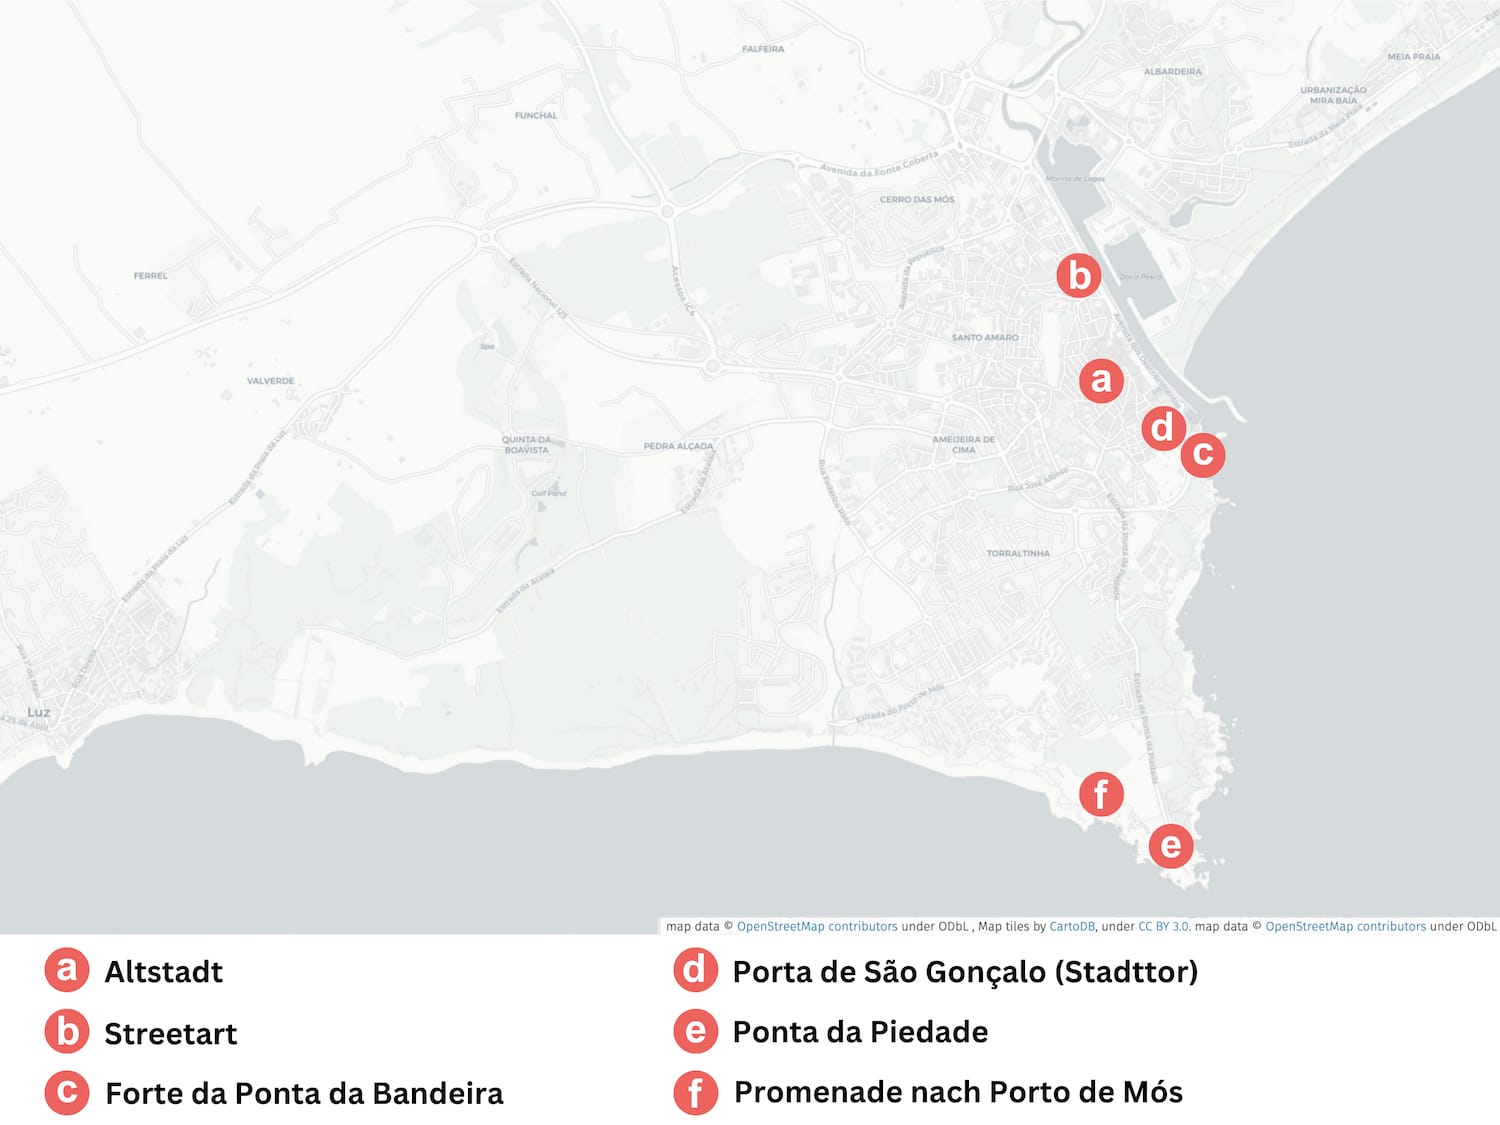 Karte von Lagos in Portugal mit Markierungen der einzelnen Lagos Sehenswürdigkeiten.